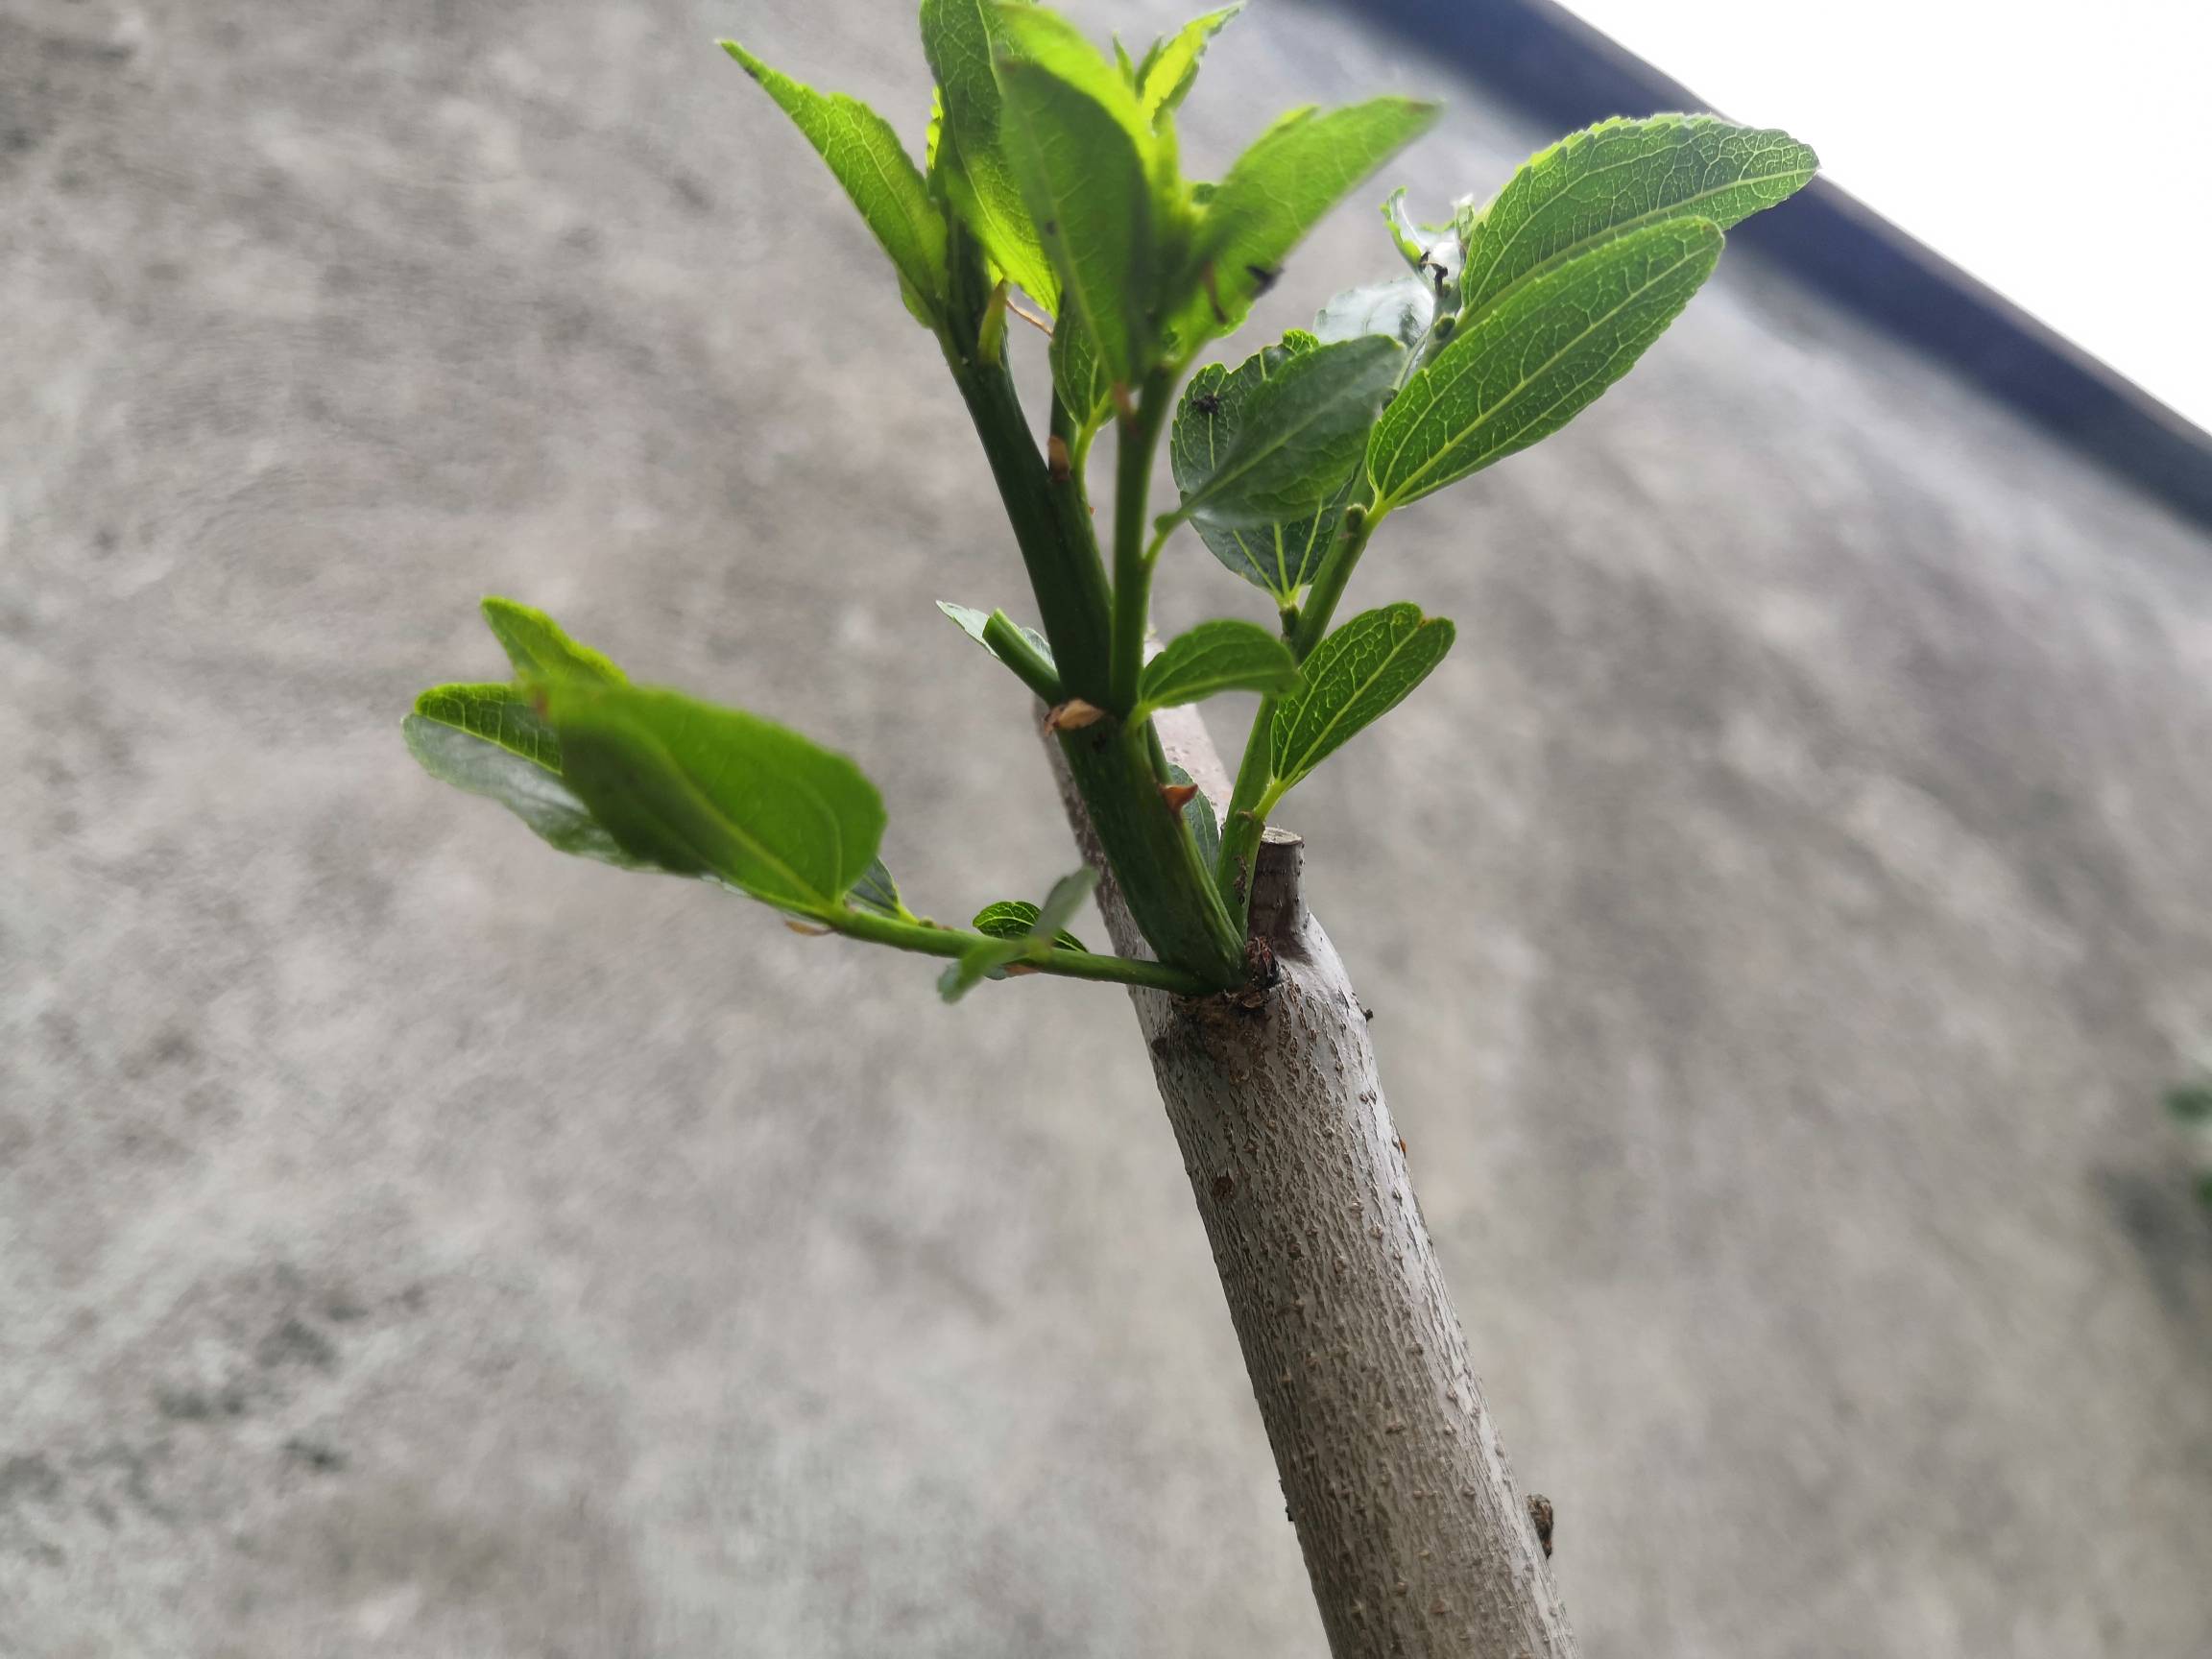 这枣树的嫩芽有点皱这是正常的吗